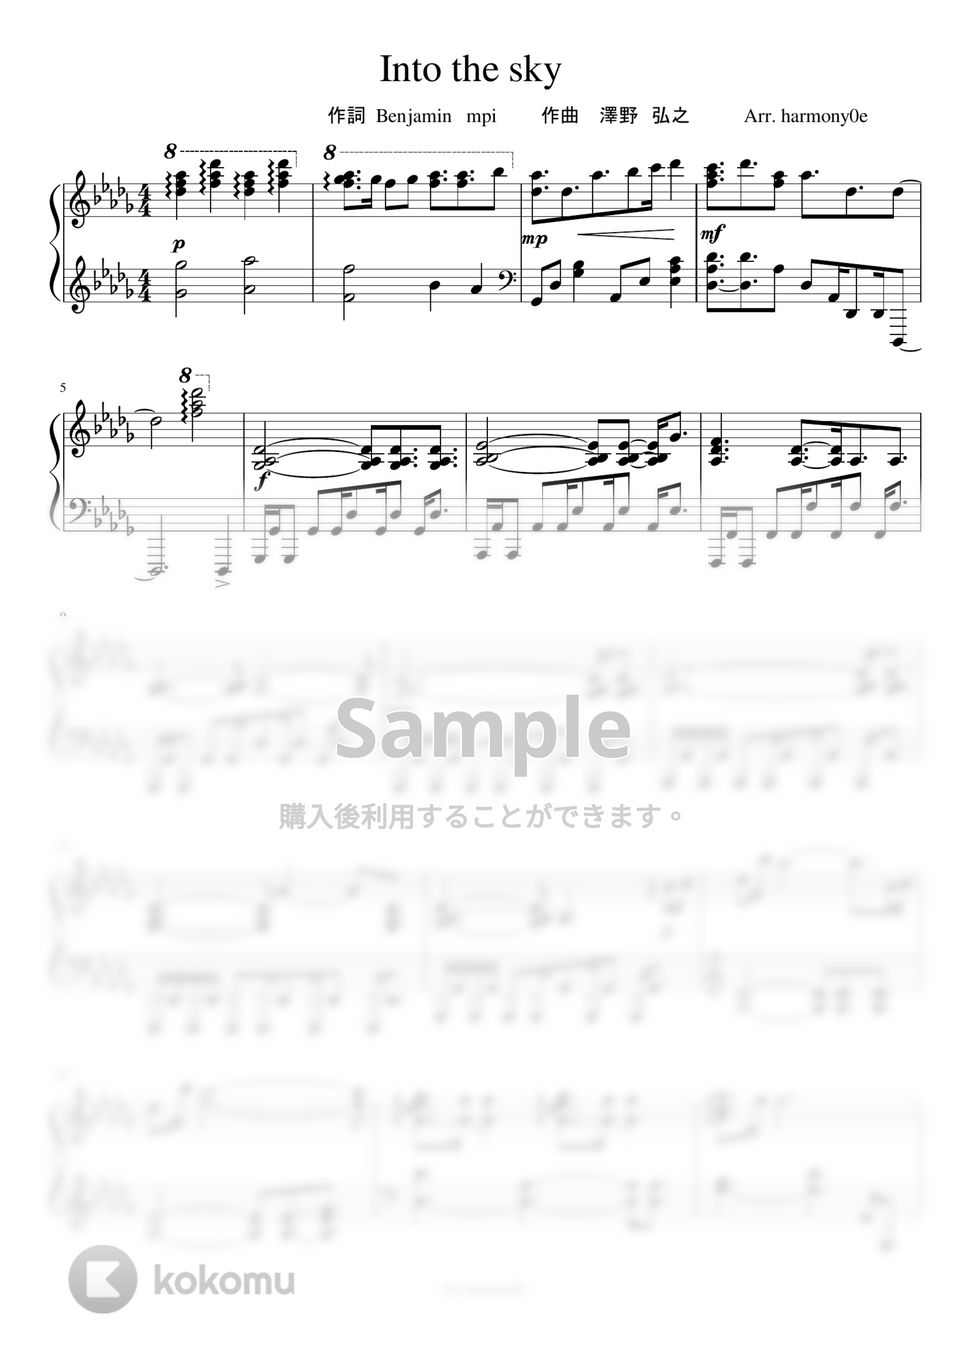 ガンダムユニコーン - Into the Sky (澤野弘之) by harmony piano